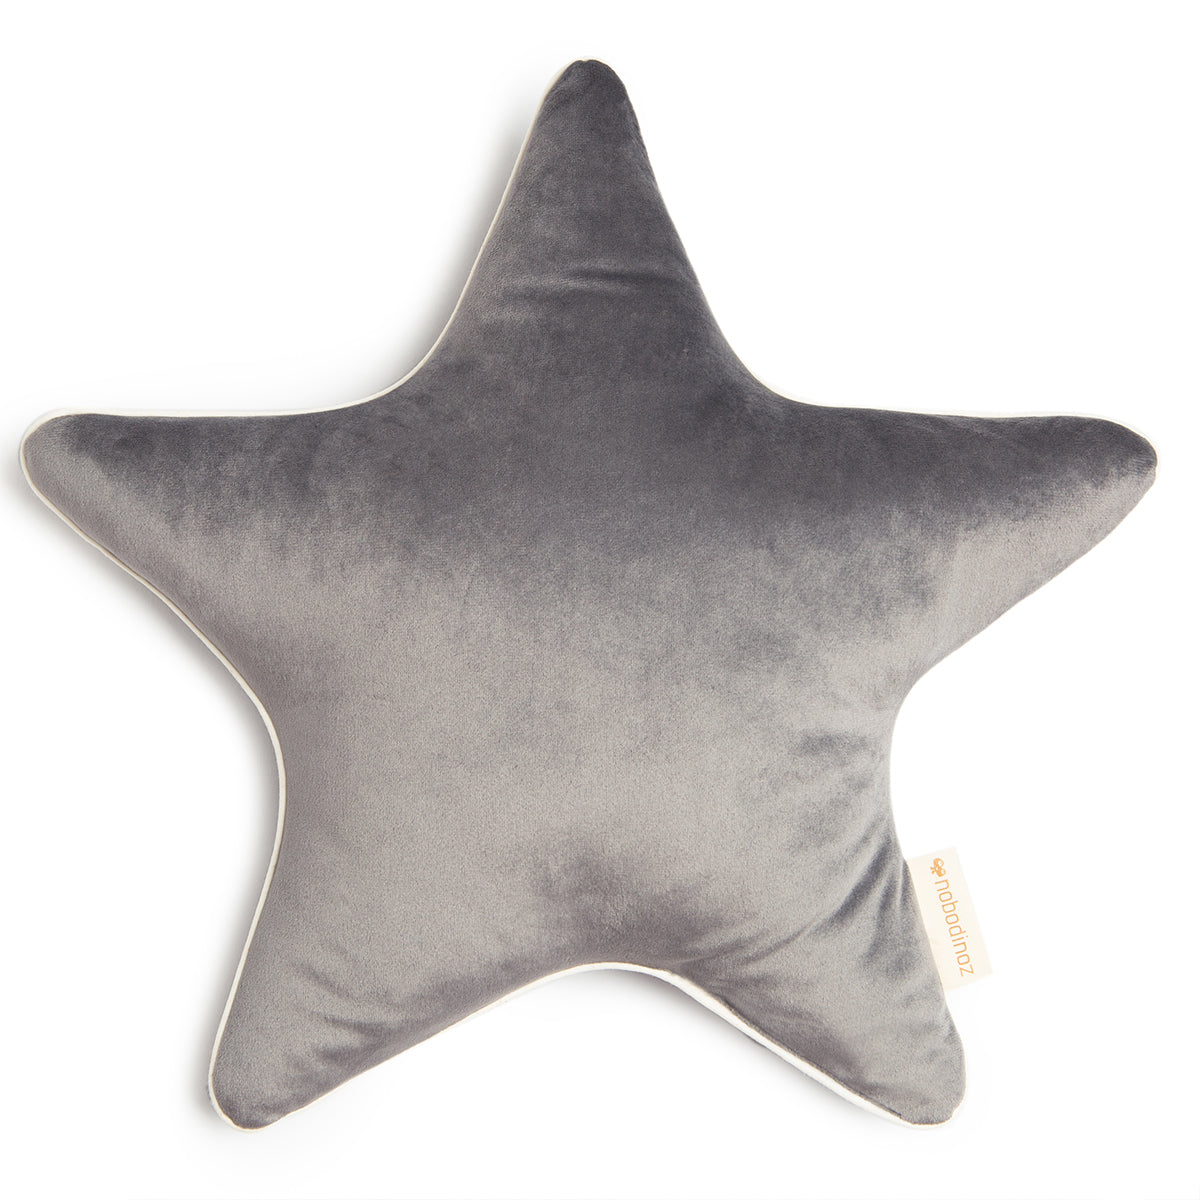 Het Nobodinoz Aristote velvet ster kussen slate grey is zacht om tegen aan te liggen en cute om te zien. Dit stervormige sierkussen is ervoor gemaakt om het bed, de box, je stoel of je cosy corner te laten schitteren. VanZus